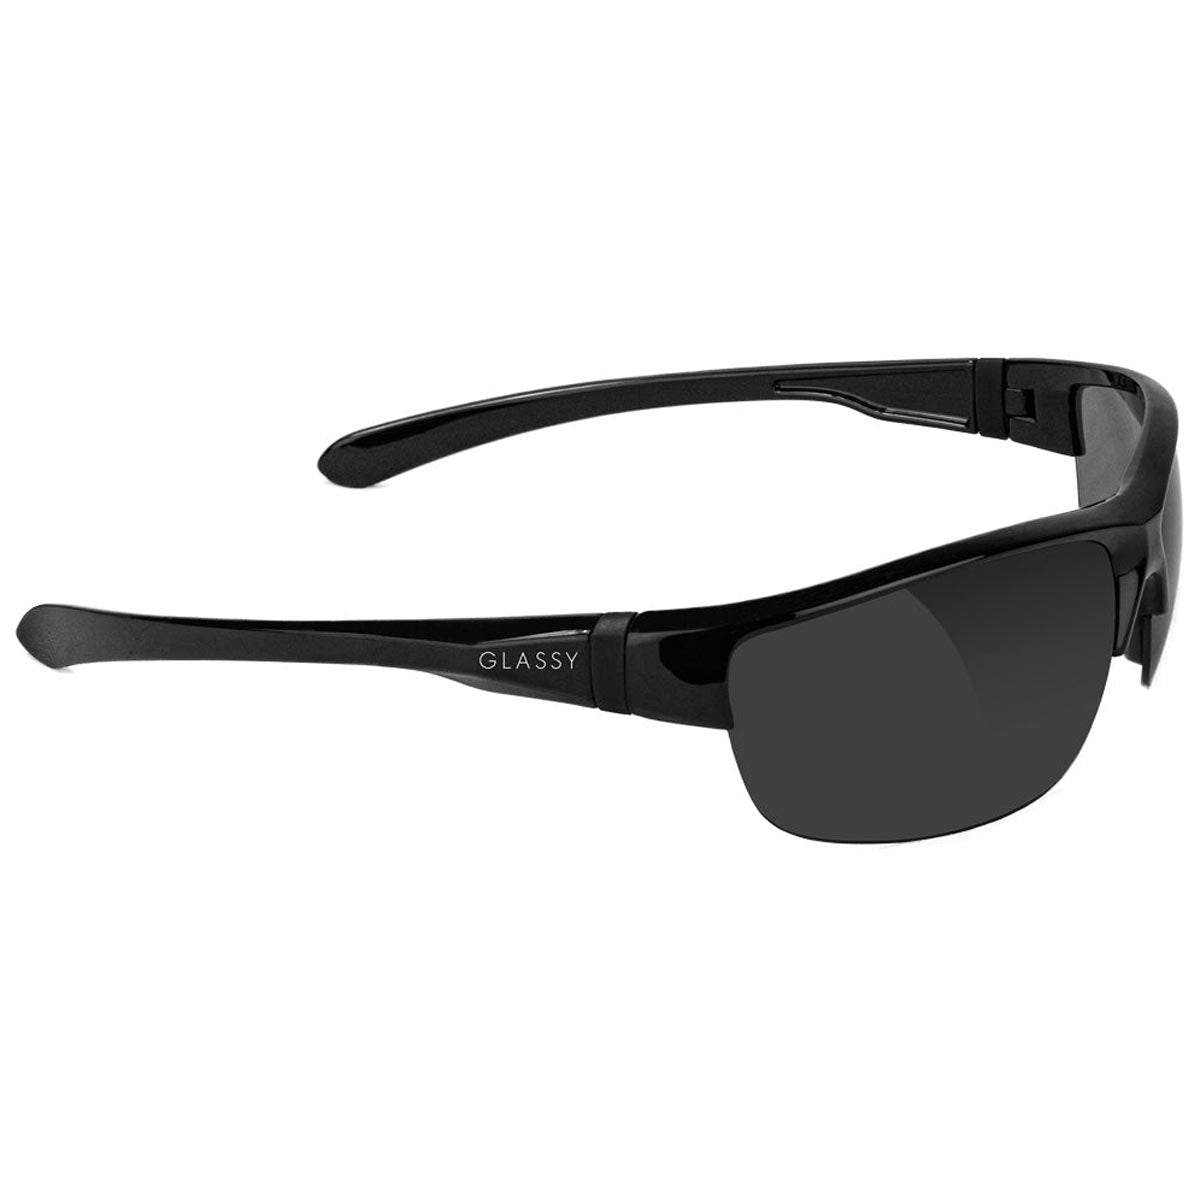 Glassy Weber Plus Polarized Sunglasses - Black image 2